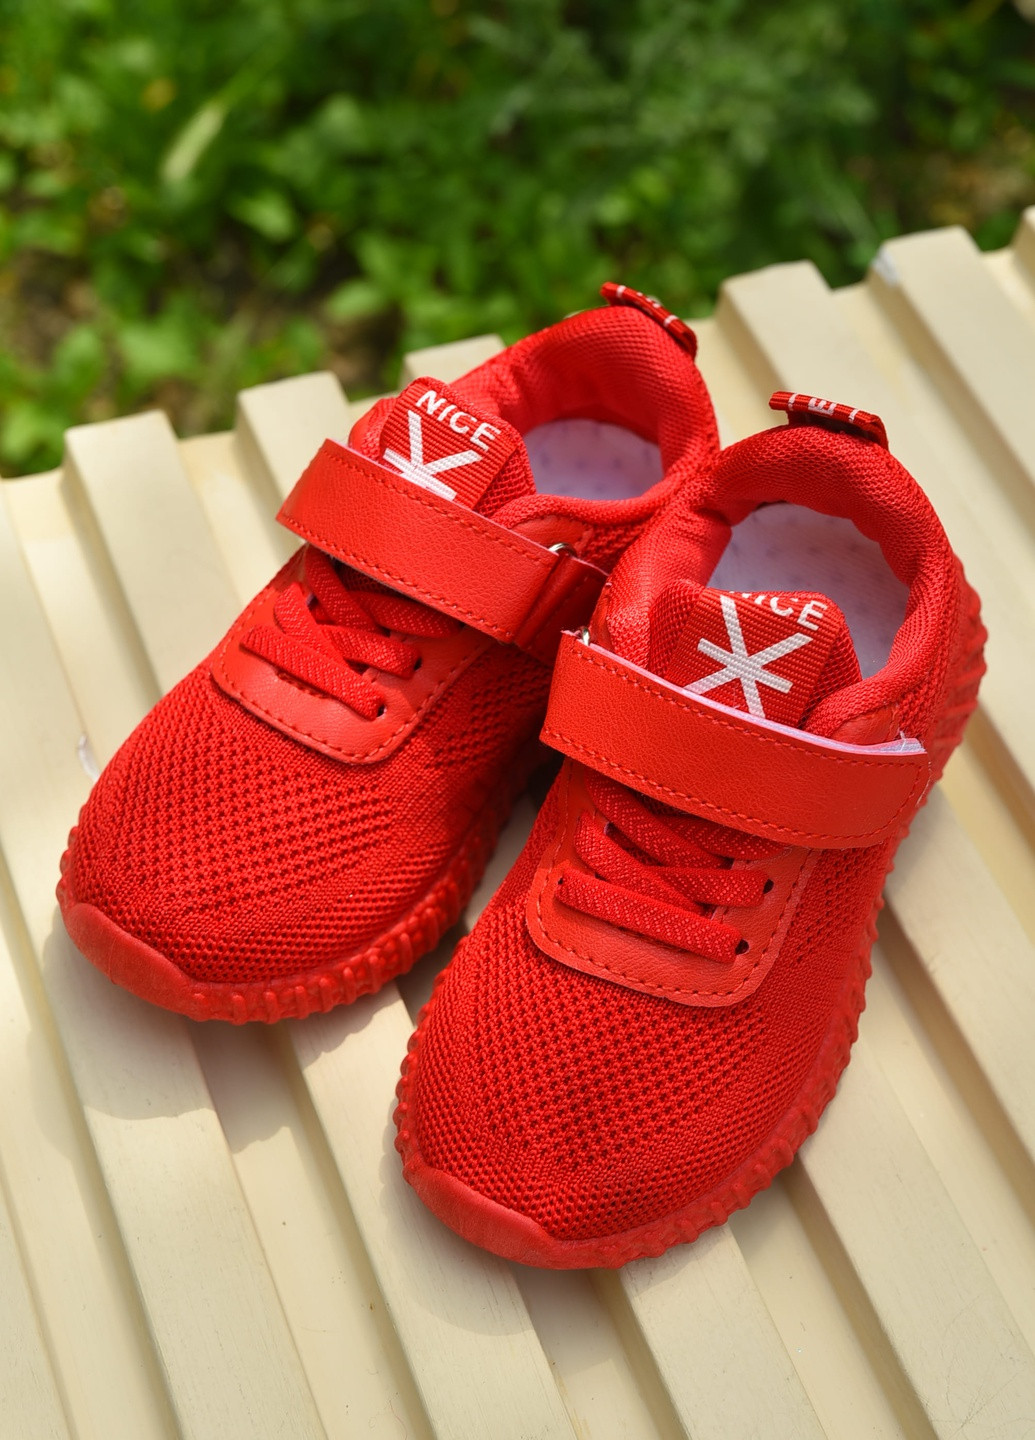 Красные демисезонные кроссовки детские для девочки красного цвета Let's Shop